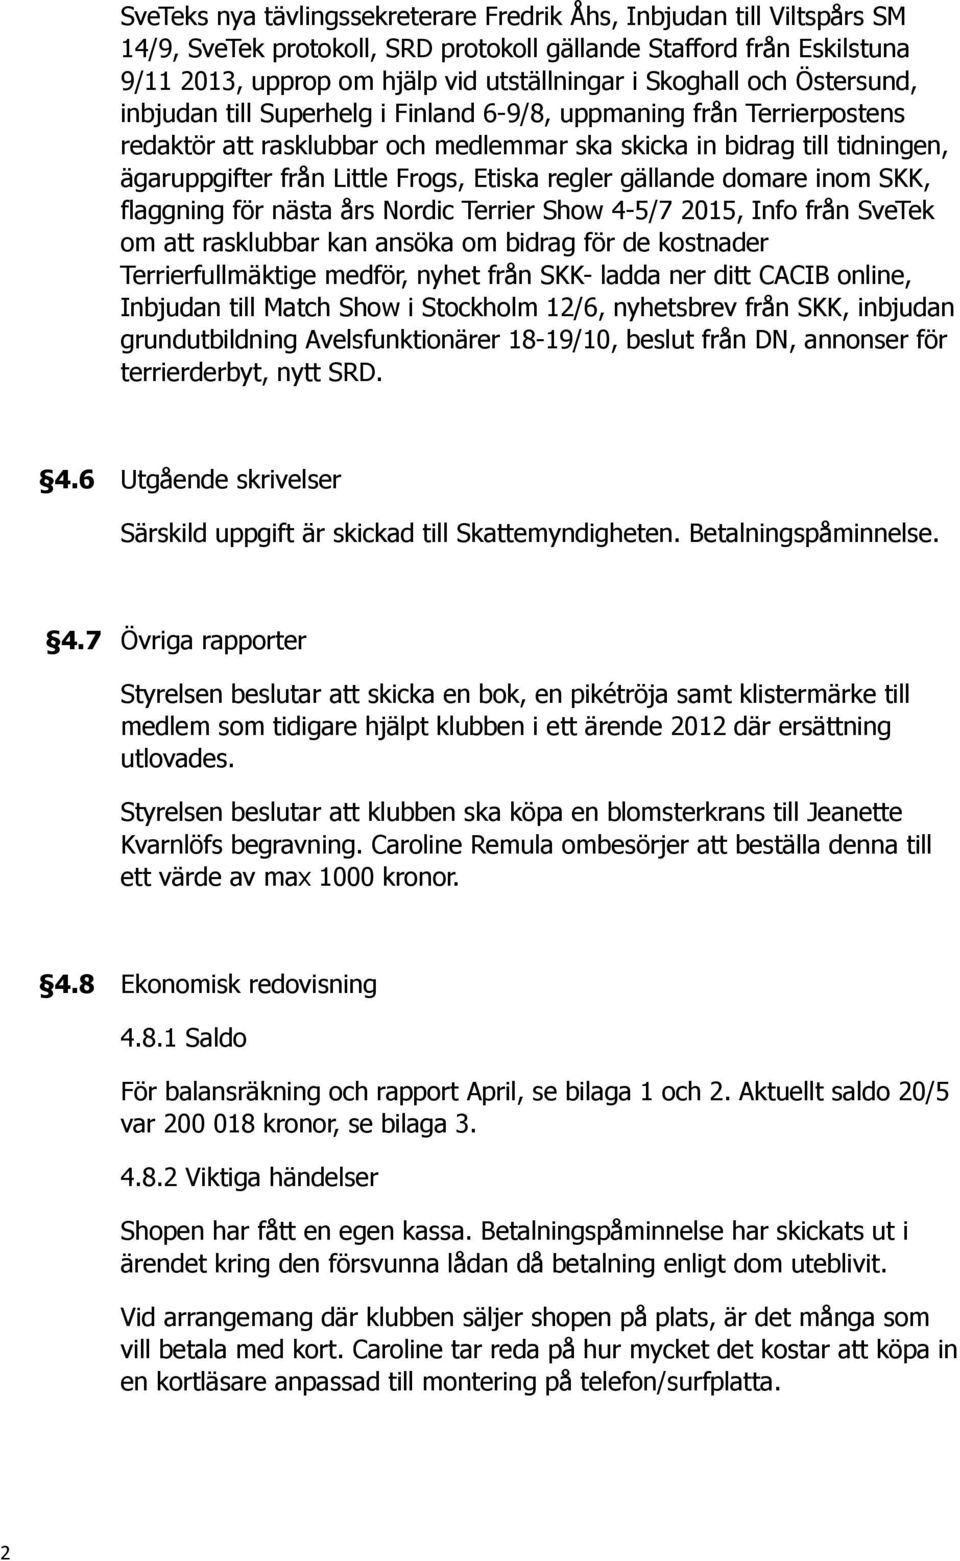 Etiska regler gällande domare inom SKK, flaggning för nästa års Nordic Terrier Show 4-5/7 2015, Info från SveTek om att rasklubbar kan ansöka om bidrag för de kostnader Terrierfullmäktige medför,